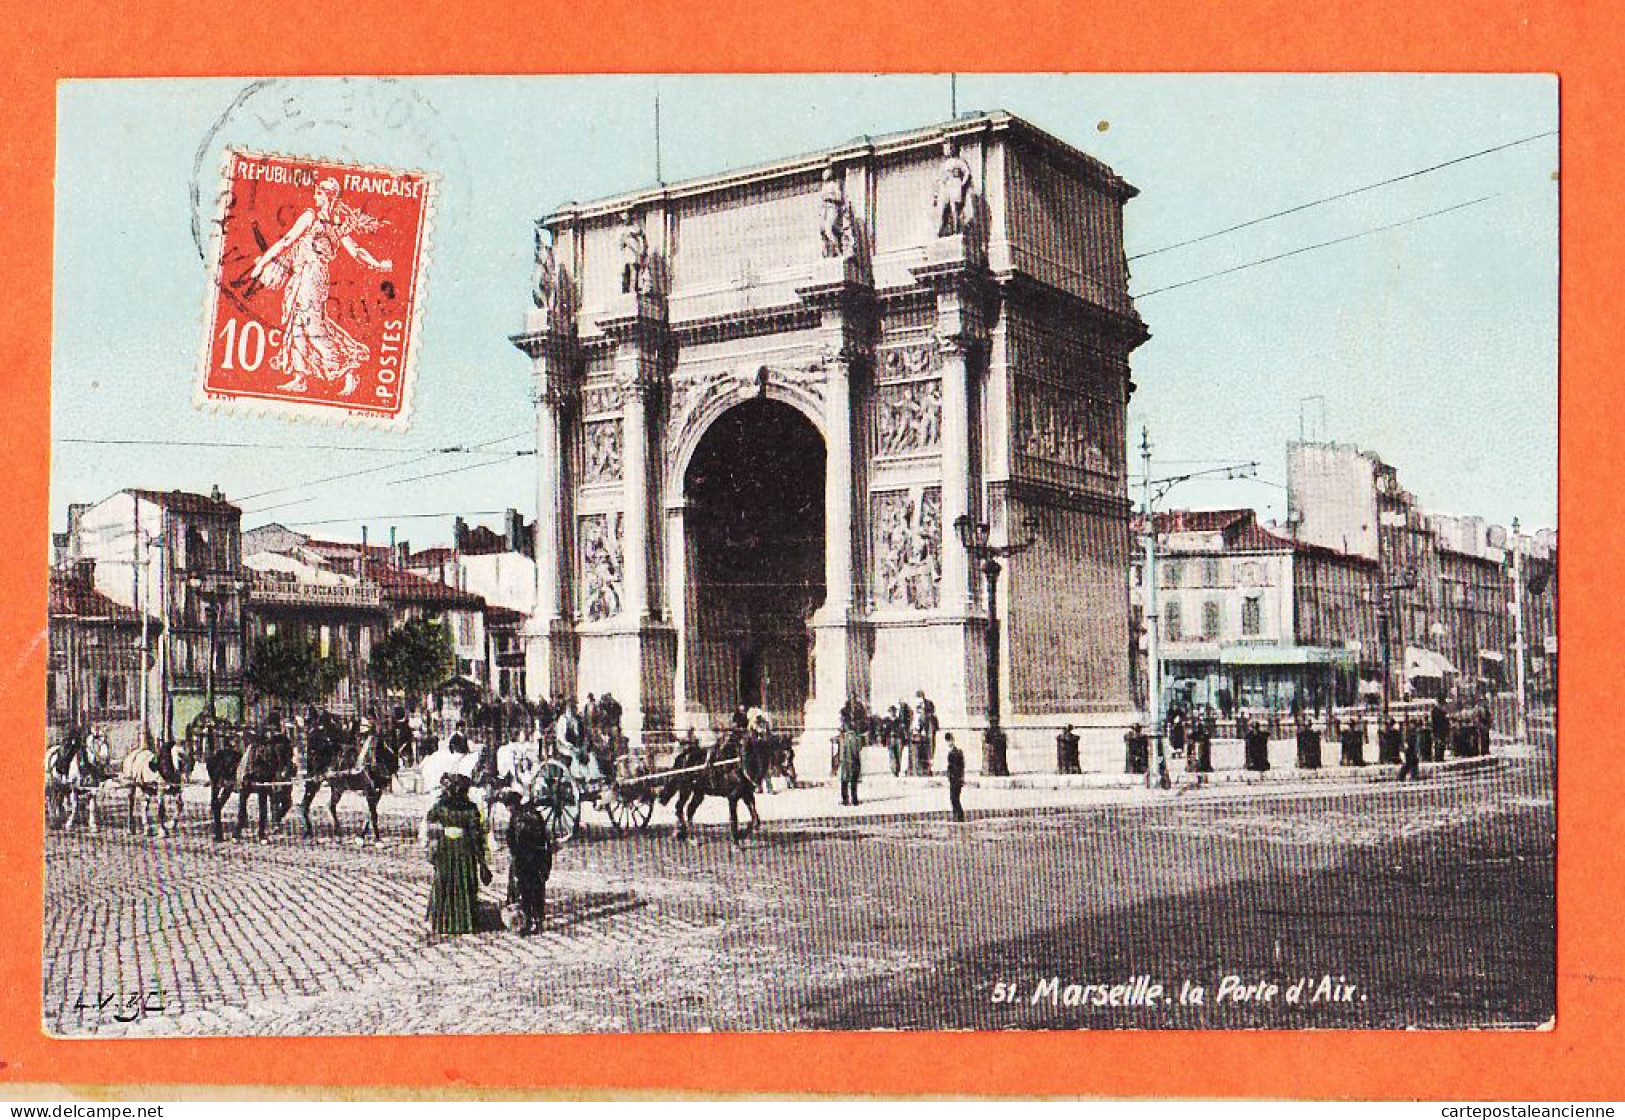 35013 / Aqua-Photo LEOPOLD VERGER 51 MARSEILLE (13) La Porte D' AIX 1910 à GARIDOU Mercerie Port-Vendres - Canebière, Stadscentrum